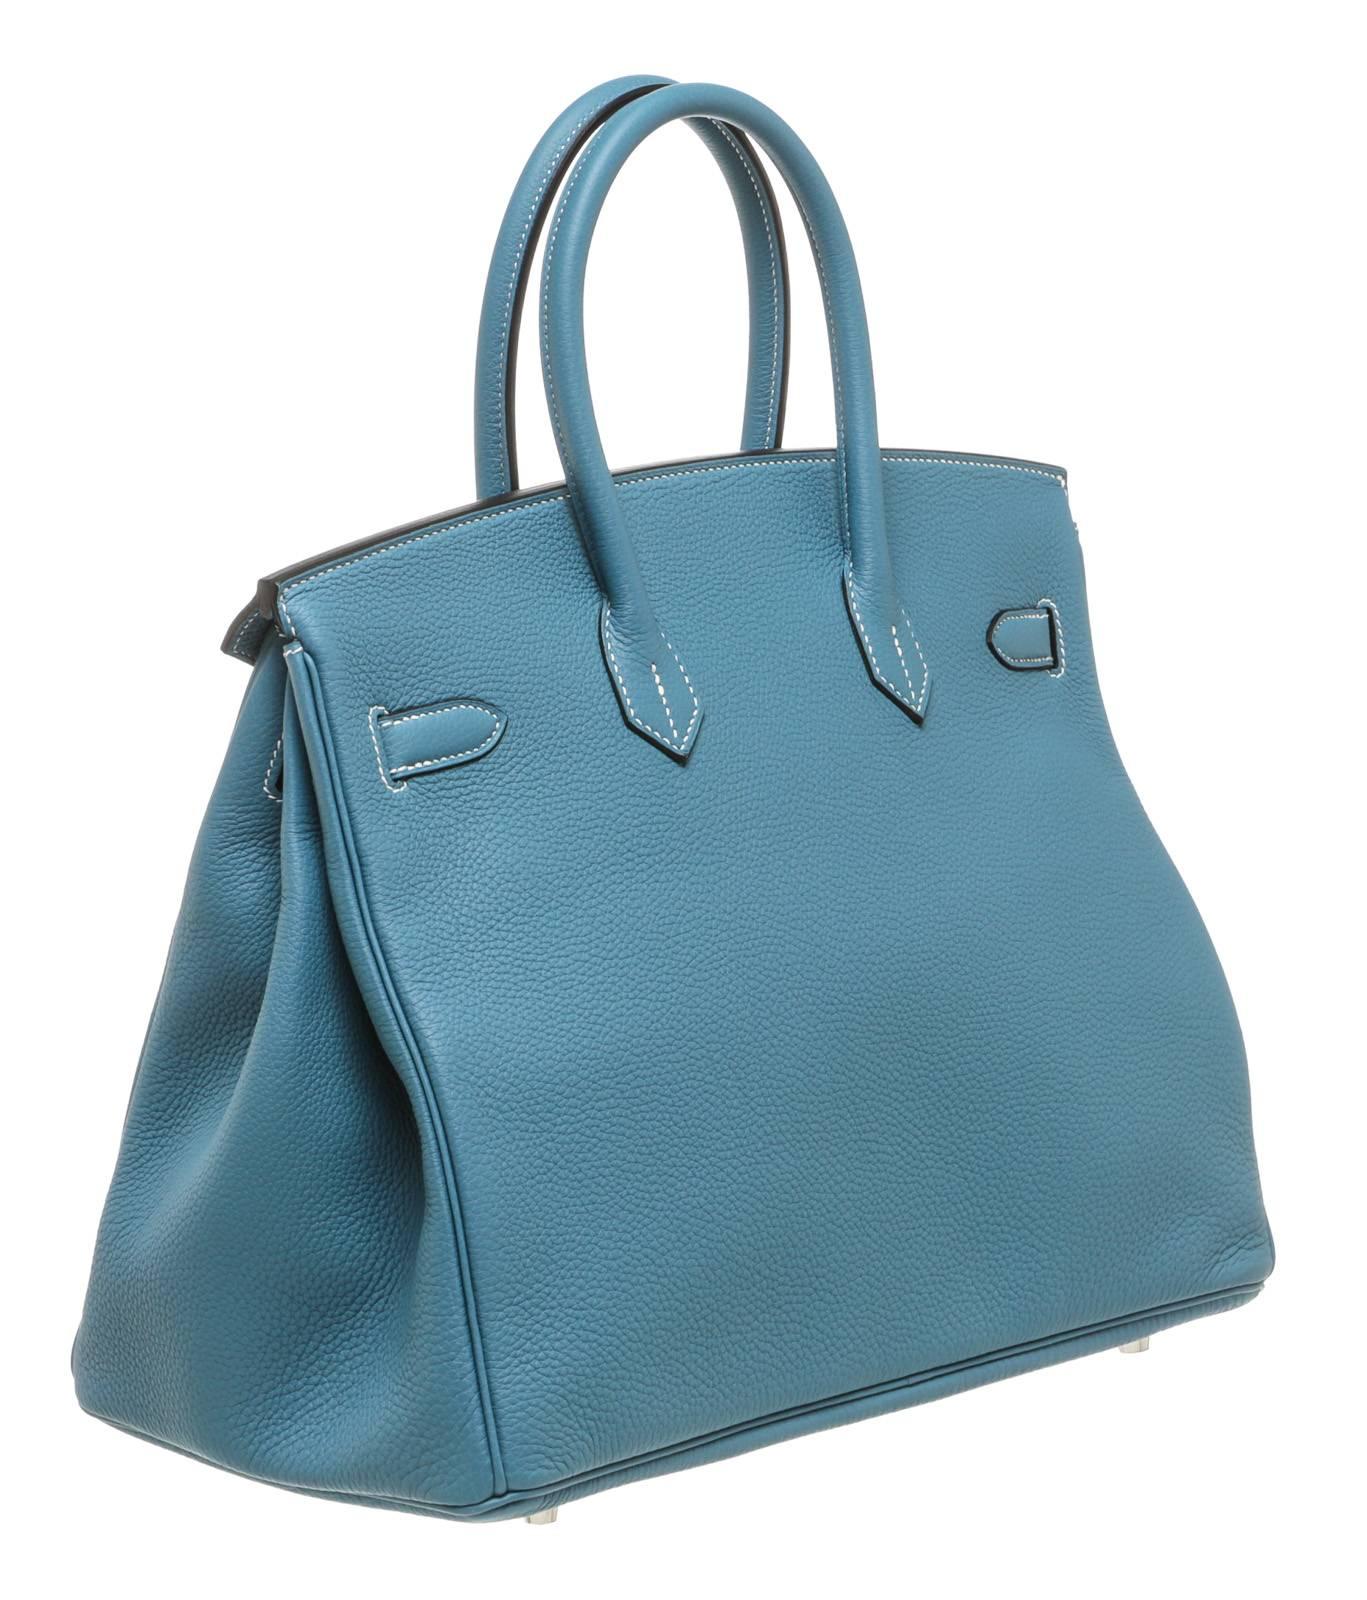 Blue Hermes Bleu Jean Togo Leather Birkin 35cm Handbag SHW For Sale